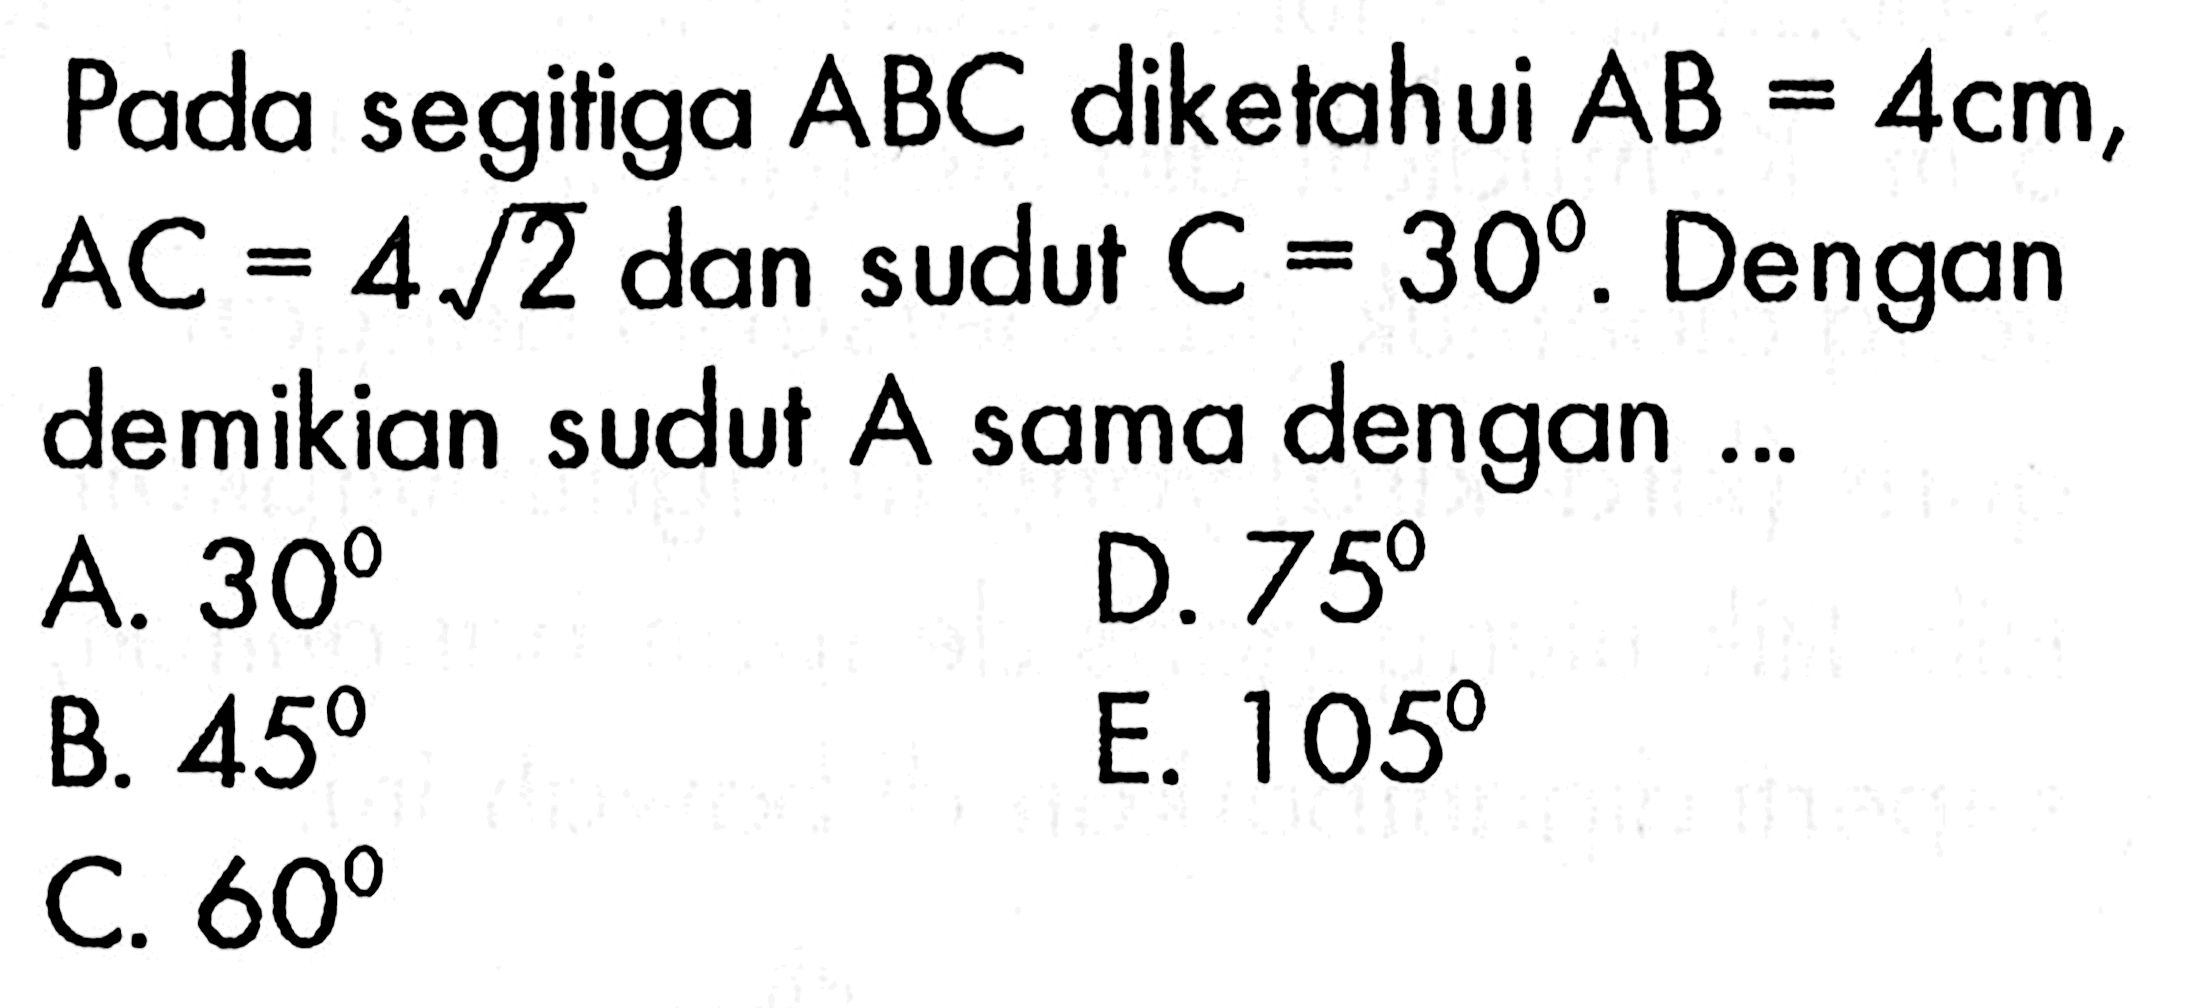 Pada segitiga ABC diketahui  AB=4 cm, AC=4 akar(2) dan sudut C=30. Dengan demikian sudut A sama dengan ...